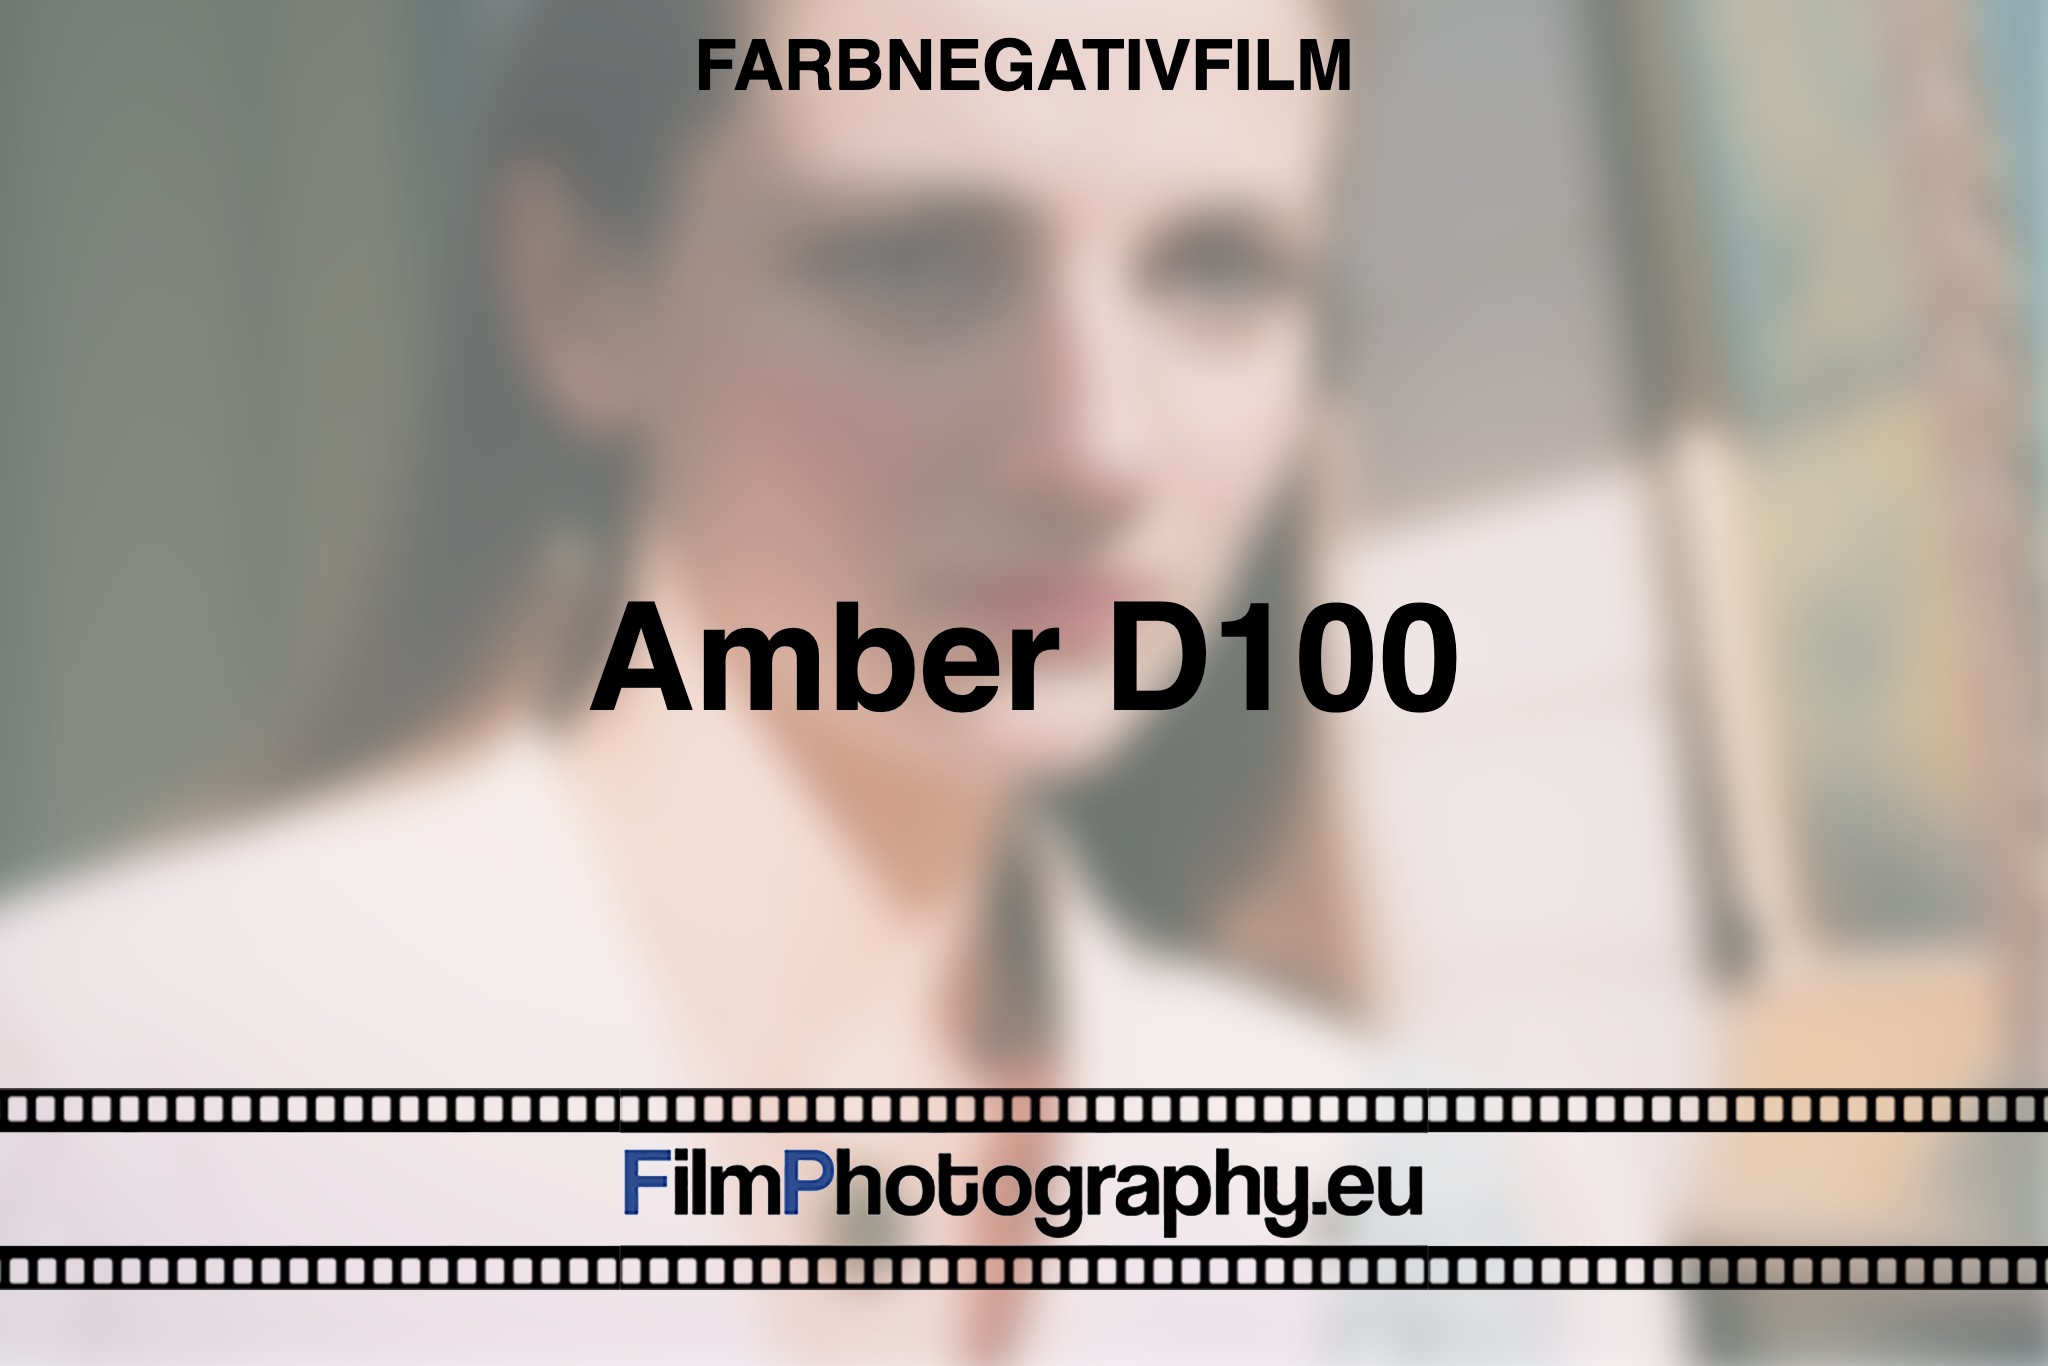 Amber-D100-Farbnegativfilm-bnv